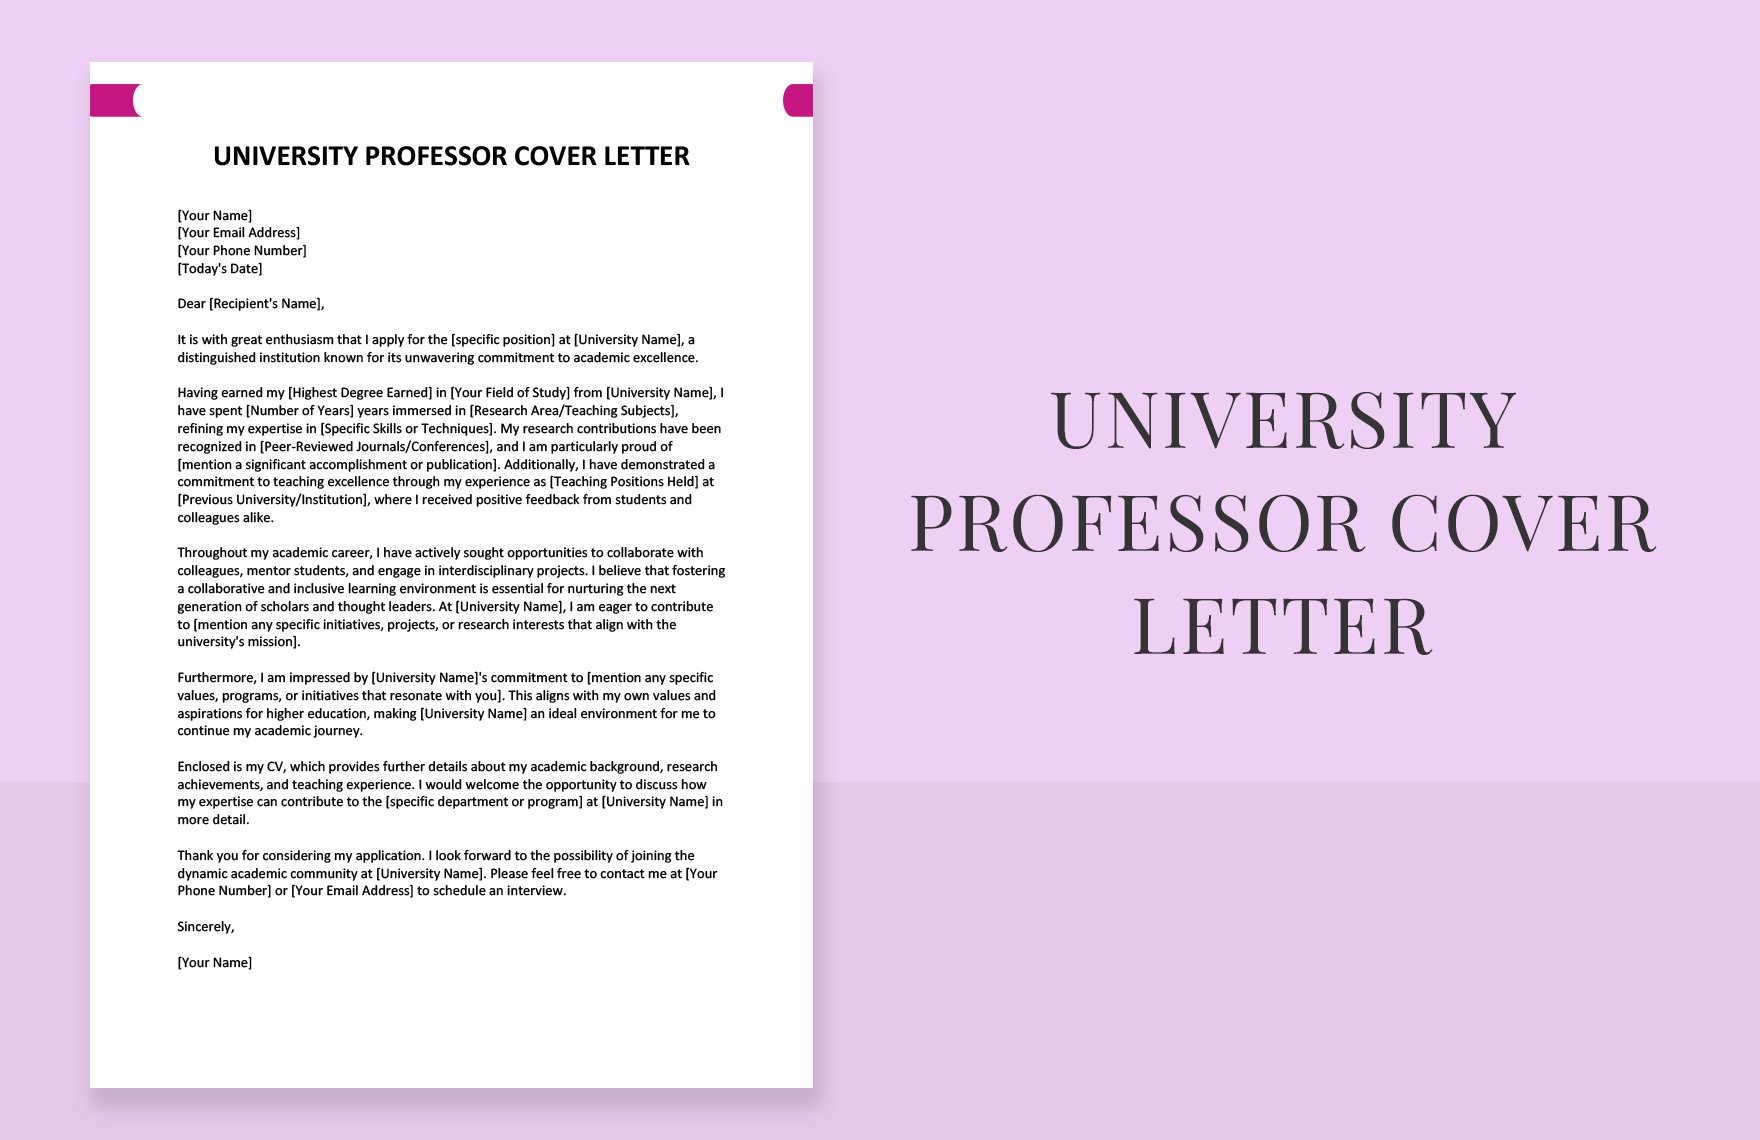 University Professor Cover Letter